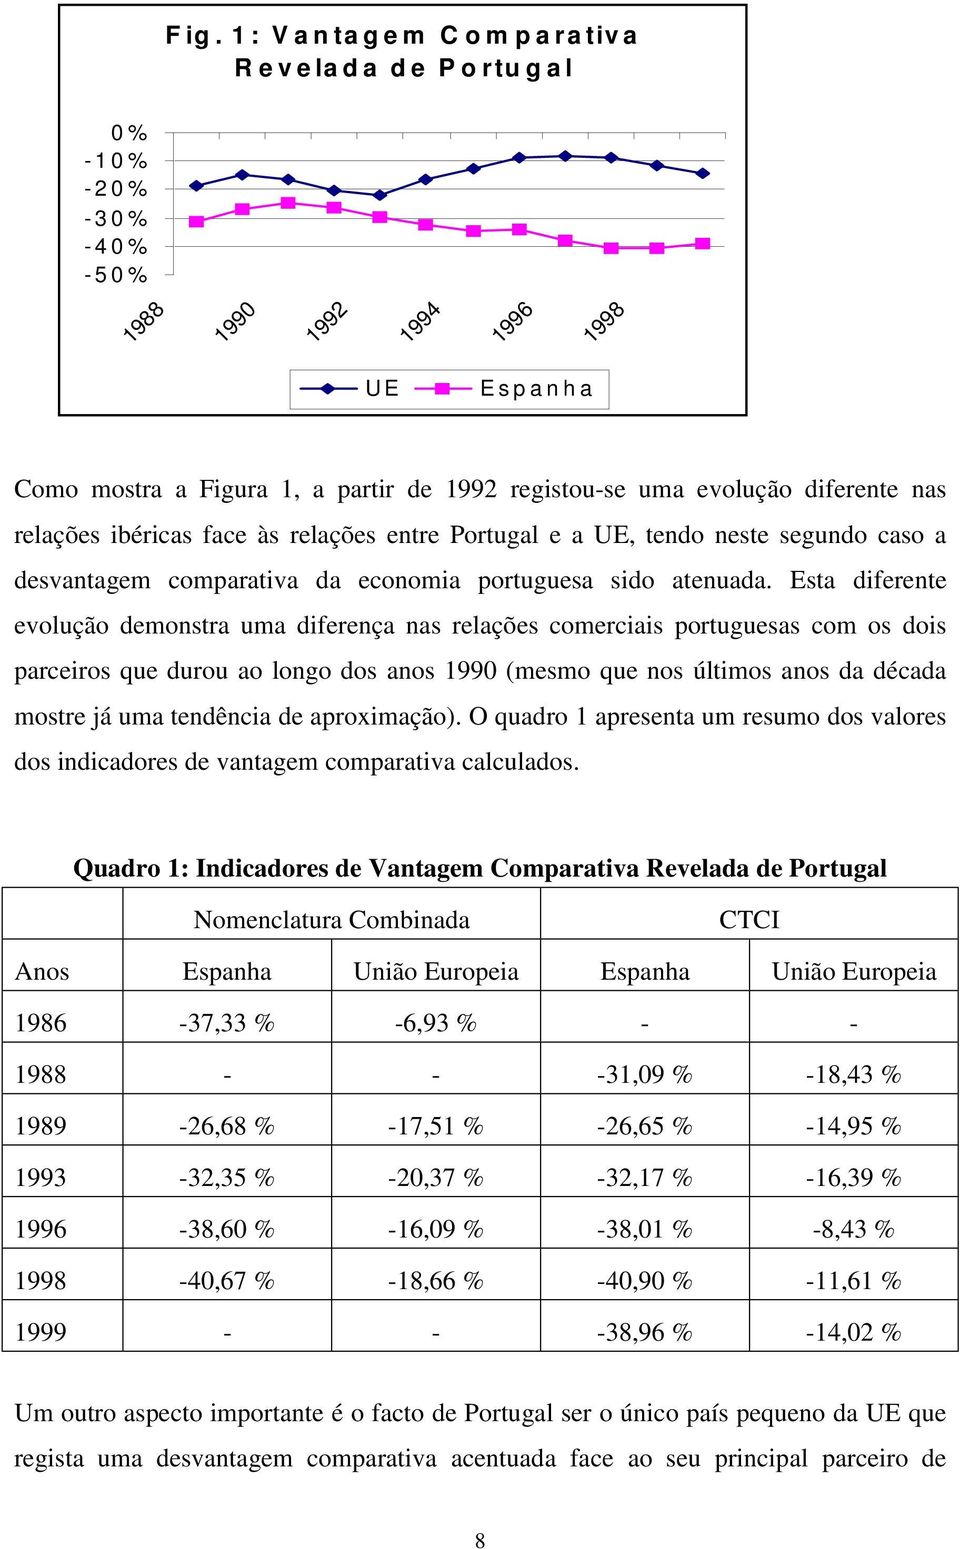 Esta diferente evolução demonstra uma diferença nas relações comerciais portuguesas com os dois parceiros que durou ao longo dos anos 1990 (mesmo que nos últimos anos da década mostre já uma